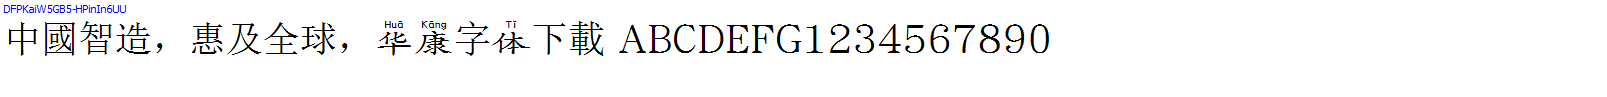 華康字體DFPKaiW5GB5-HPinIn6UU.TTF